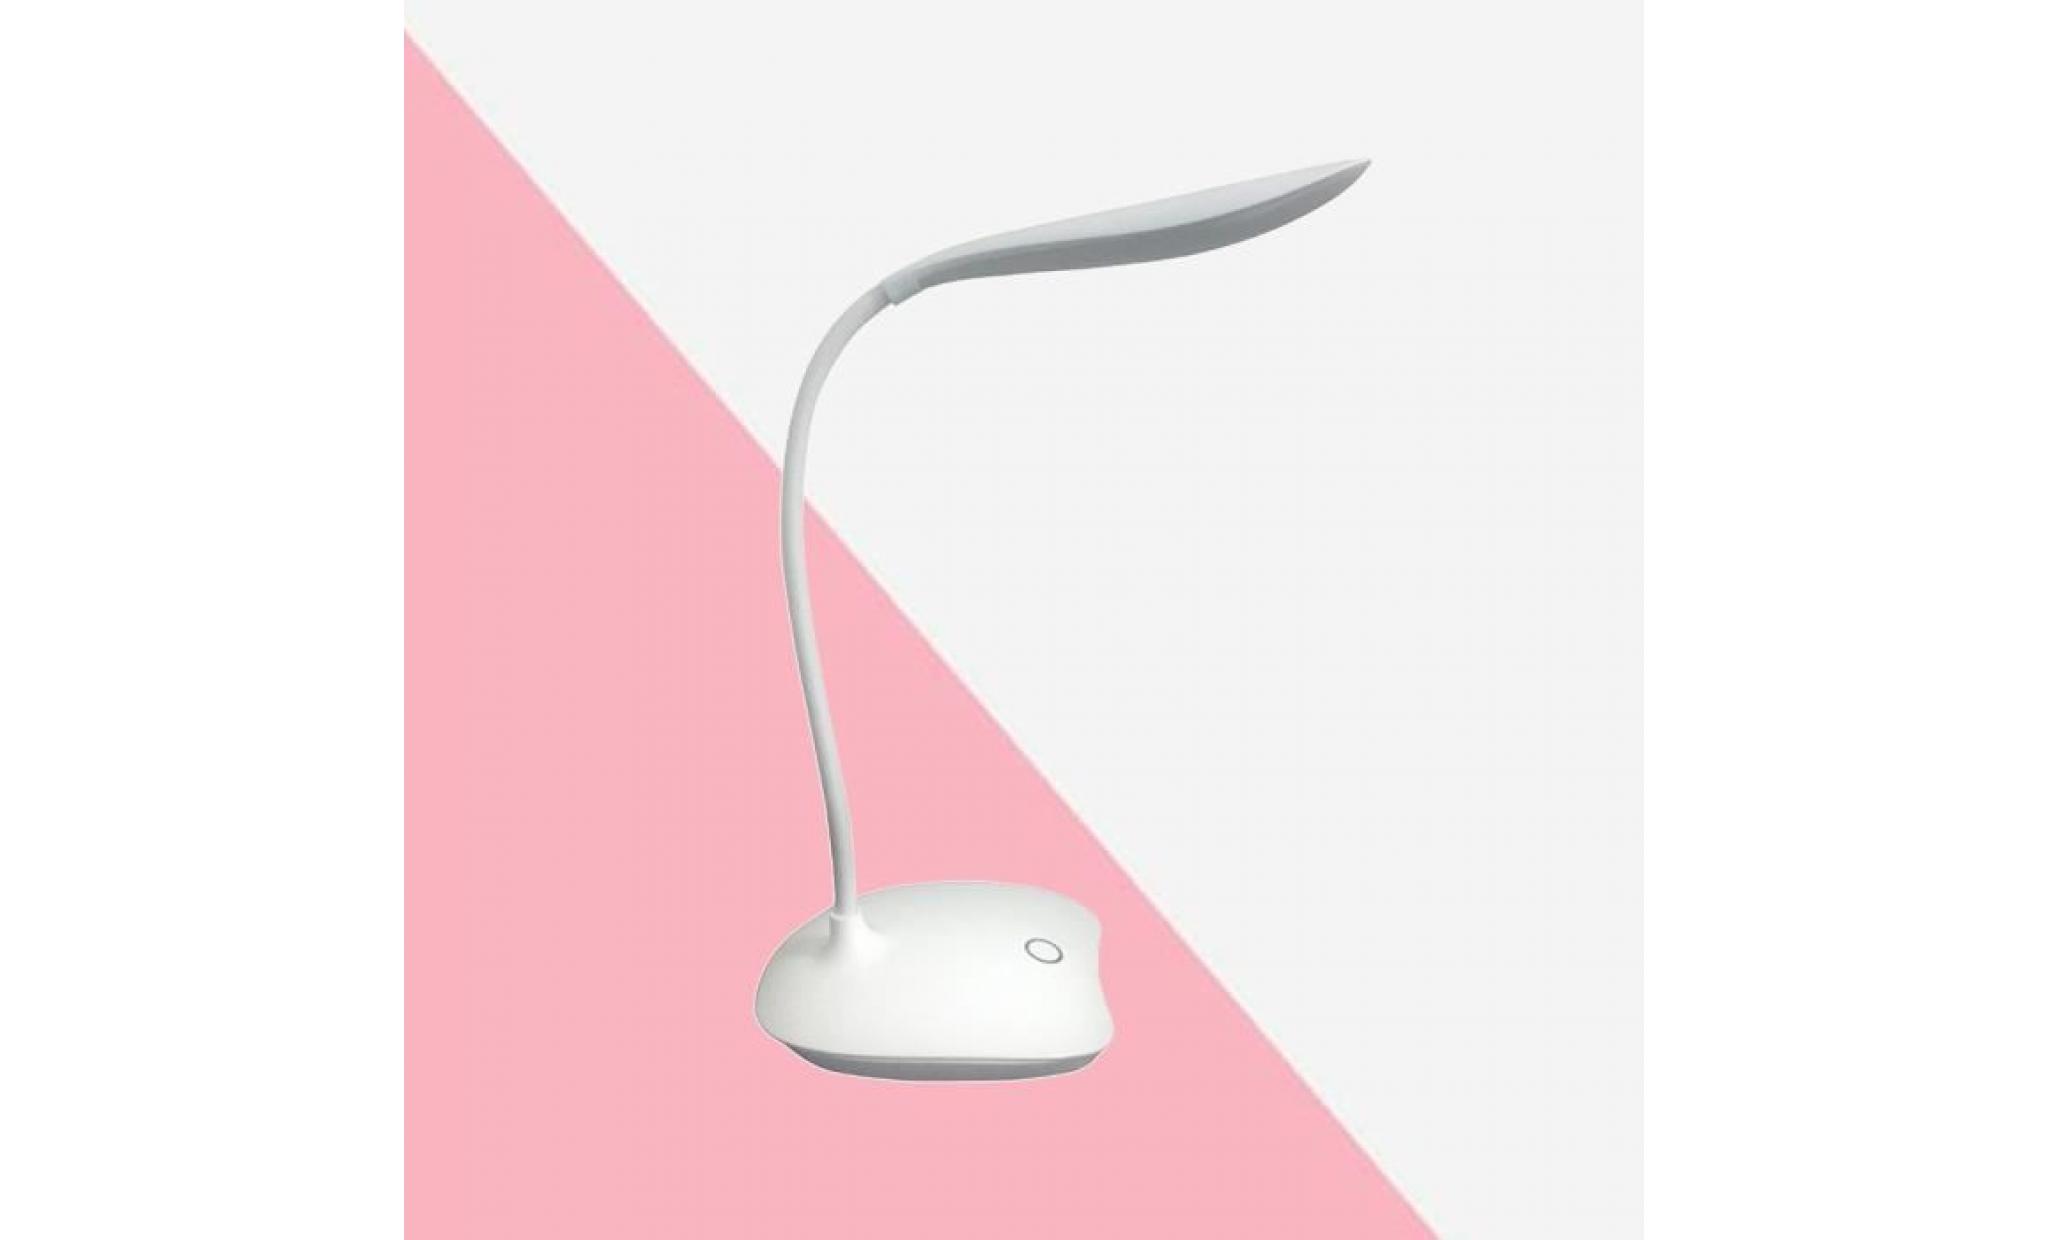 lampe de table led protection des yeux commande tactile 3 niveaux dimmable lampe de bureau rechargeable lampe de chevet pas cher